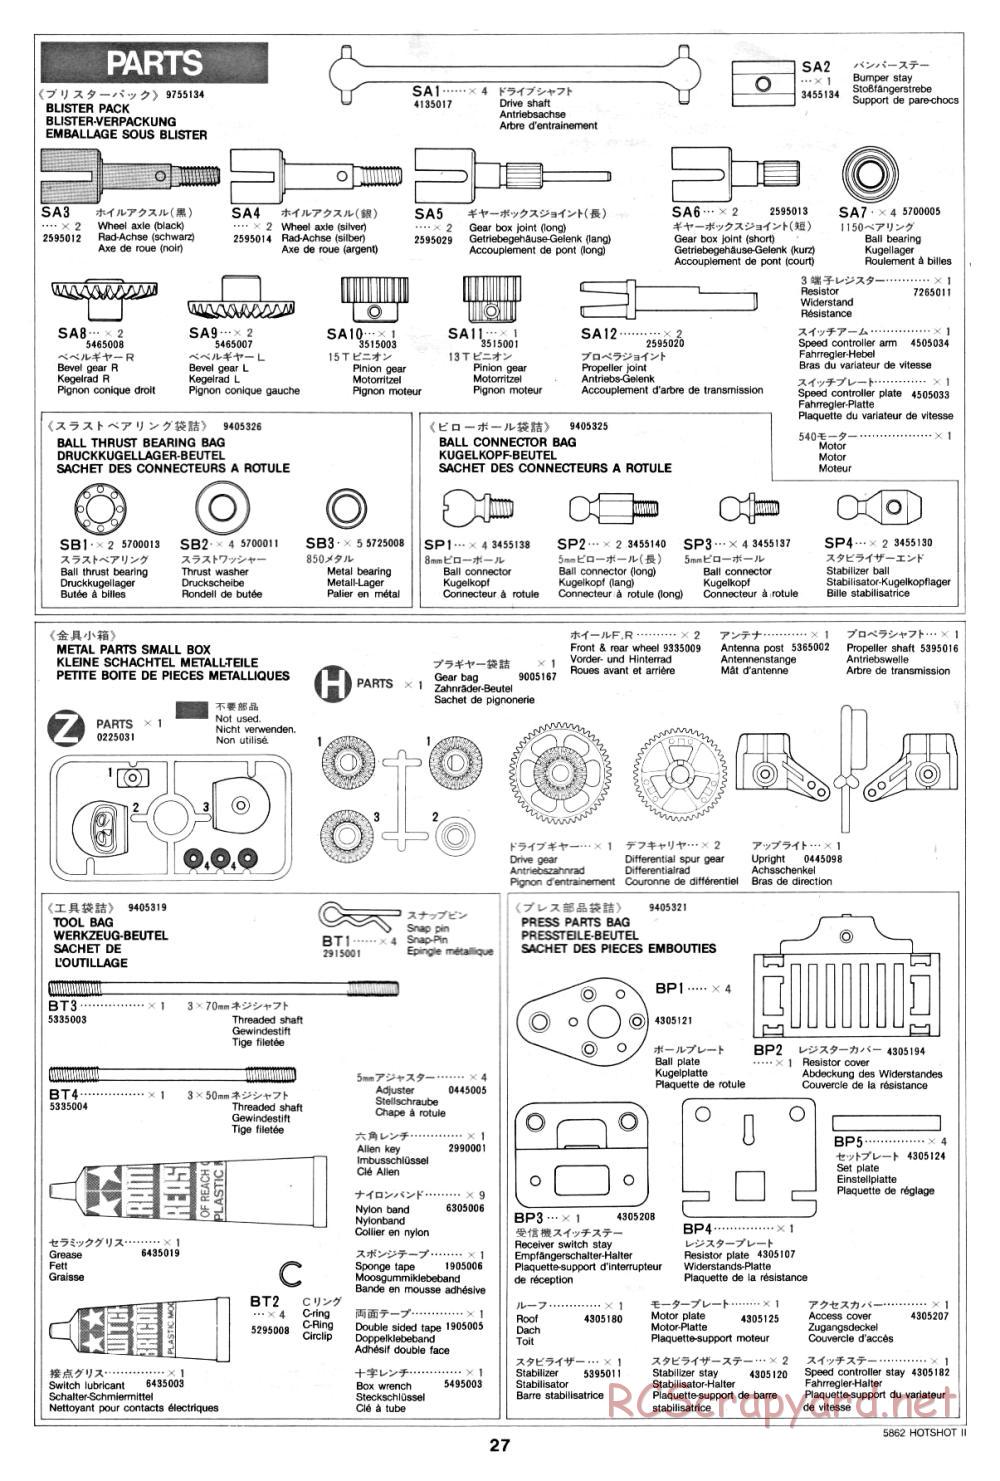 Tamiya - Hot-Shot II - 58062 - Manual - Page 27